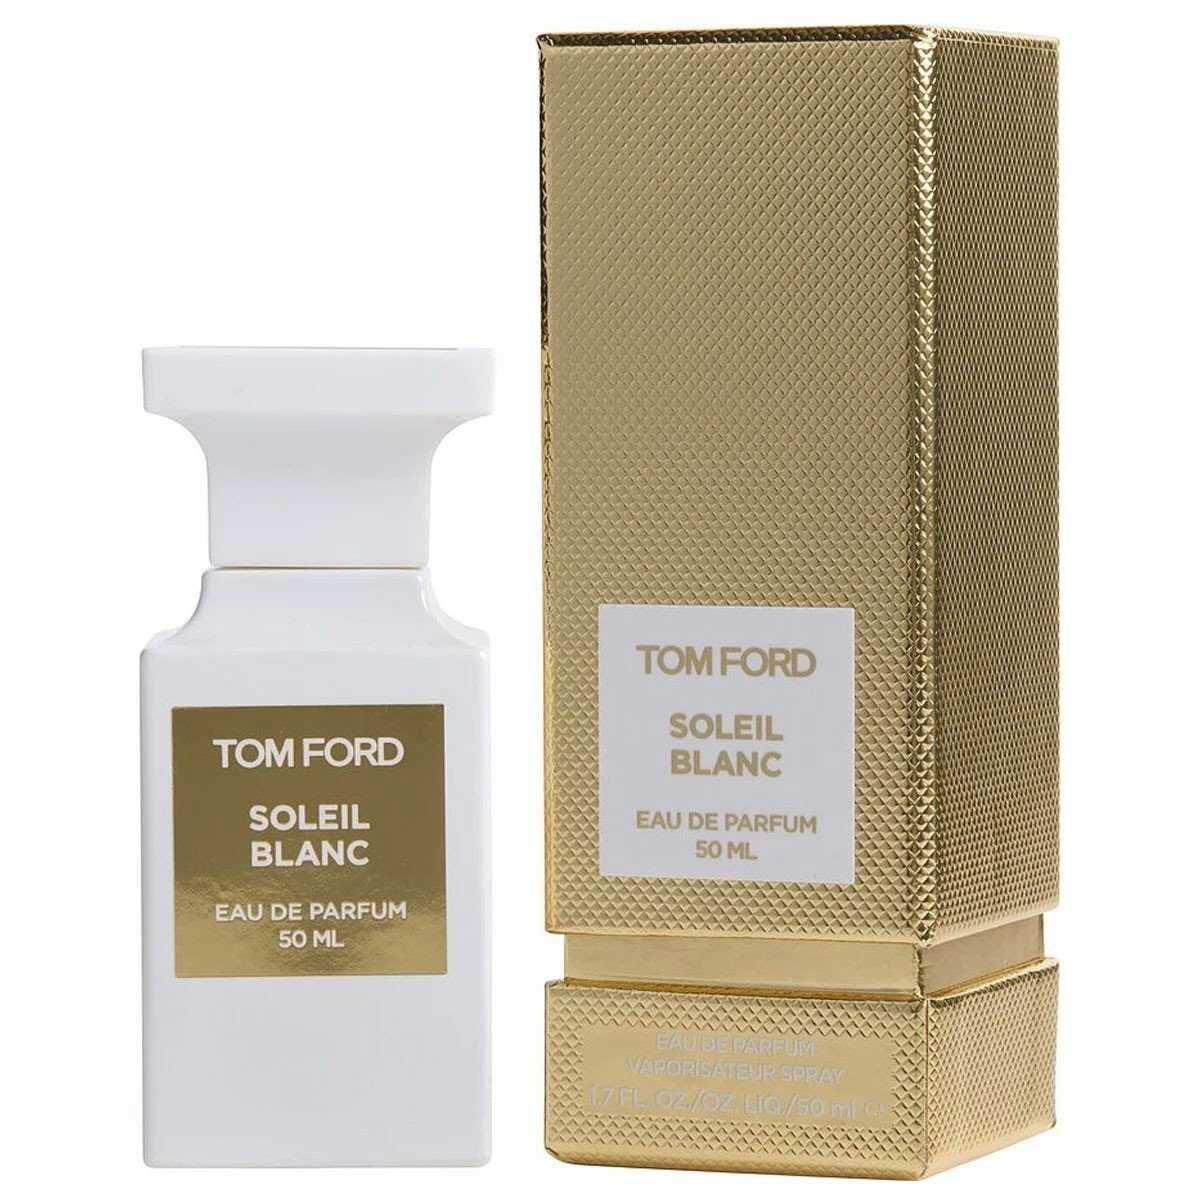  Tom Ford Soleil Blanc 50ml 